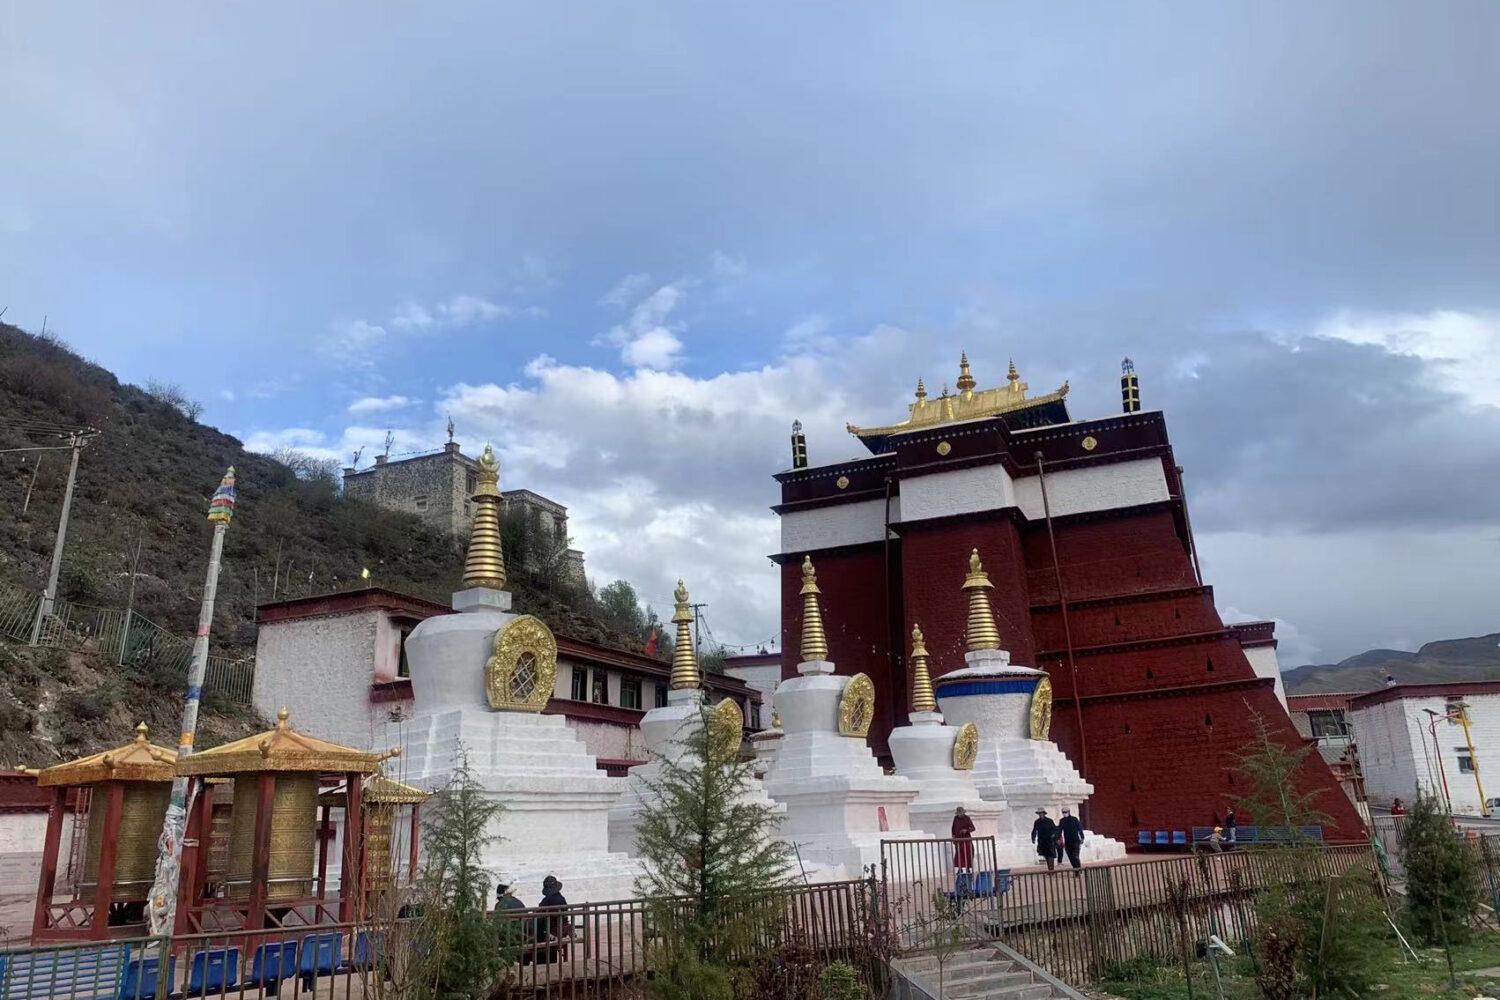 Tibet Trekking Tours